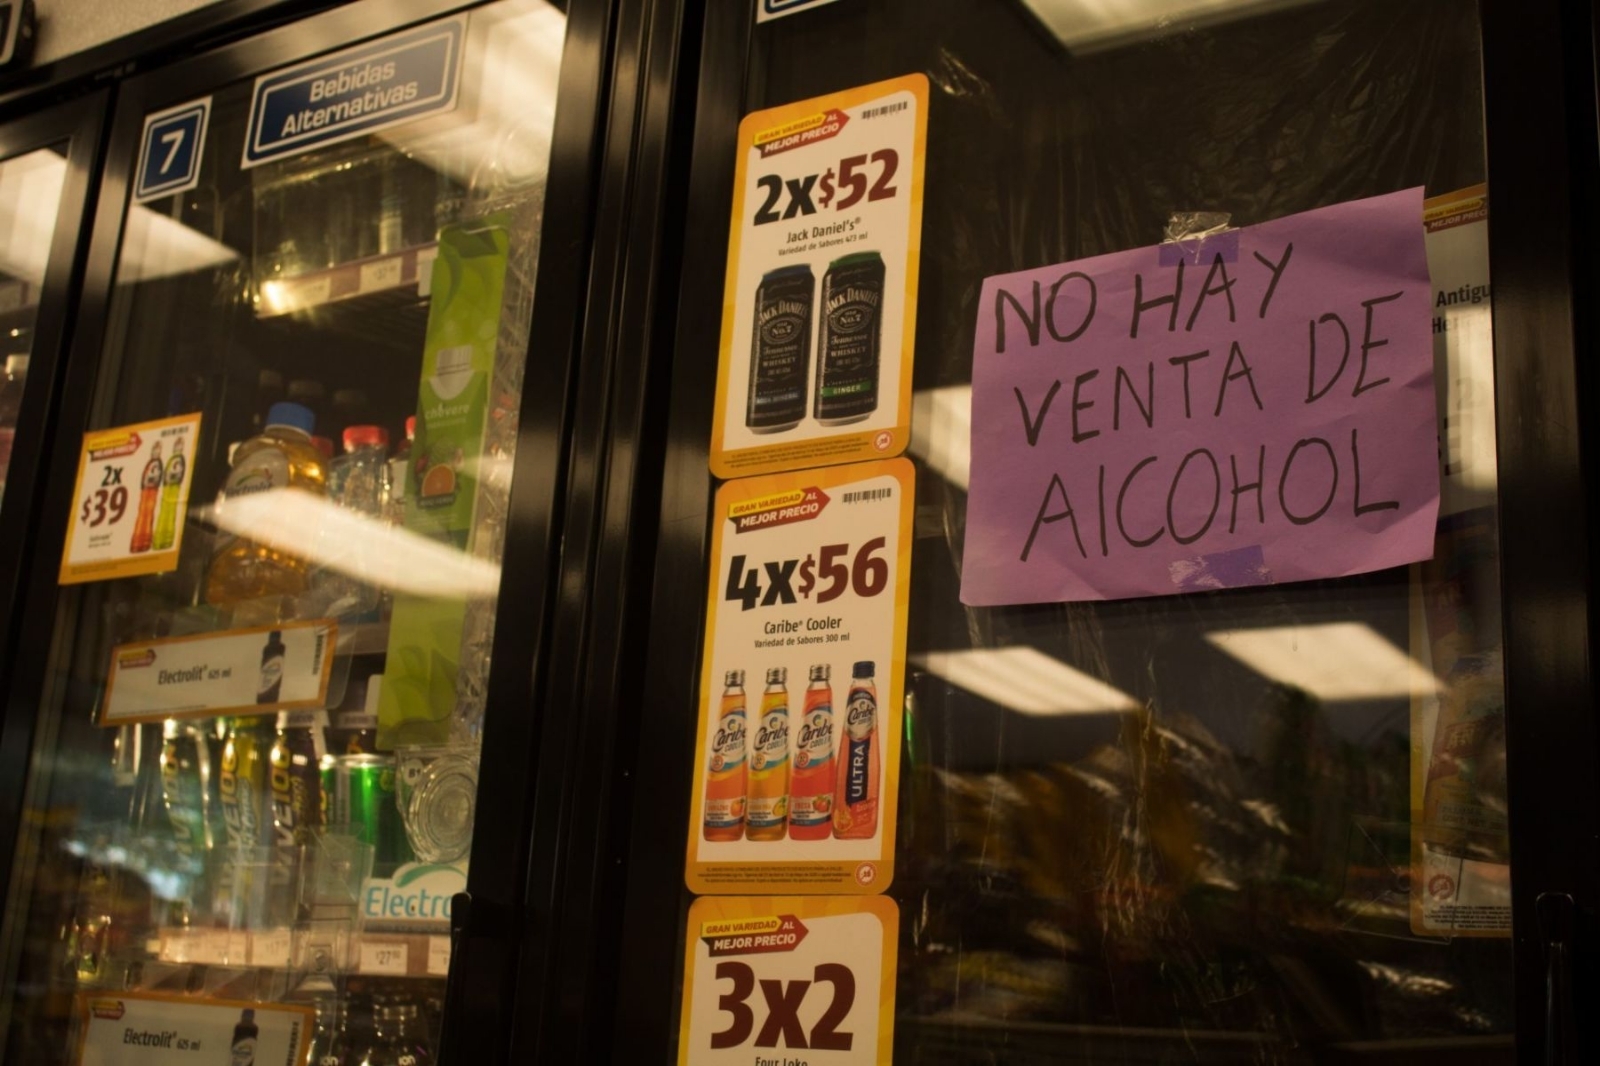 La suspensión de venta de alcohol es para mantener el orden público